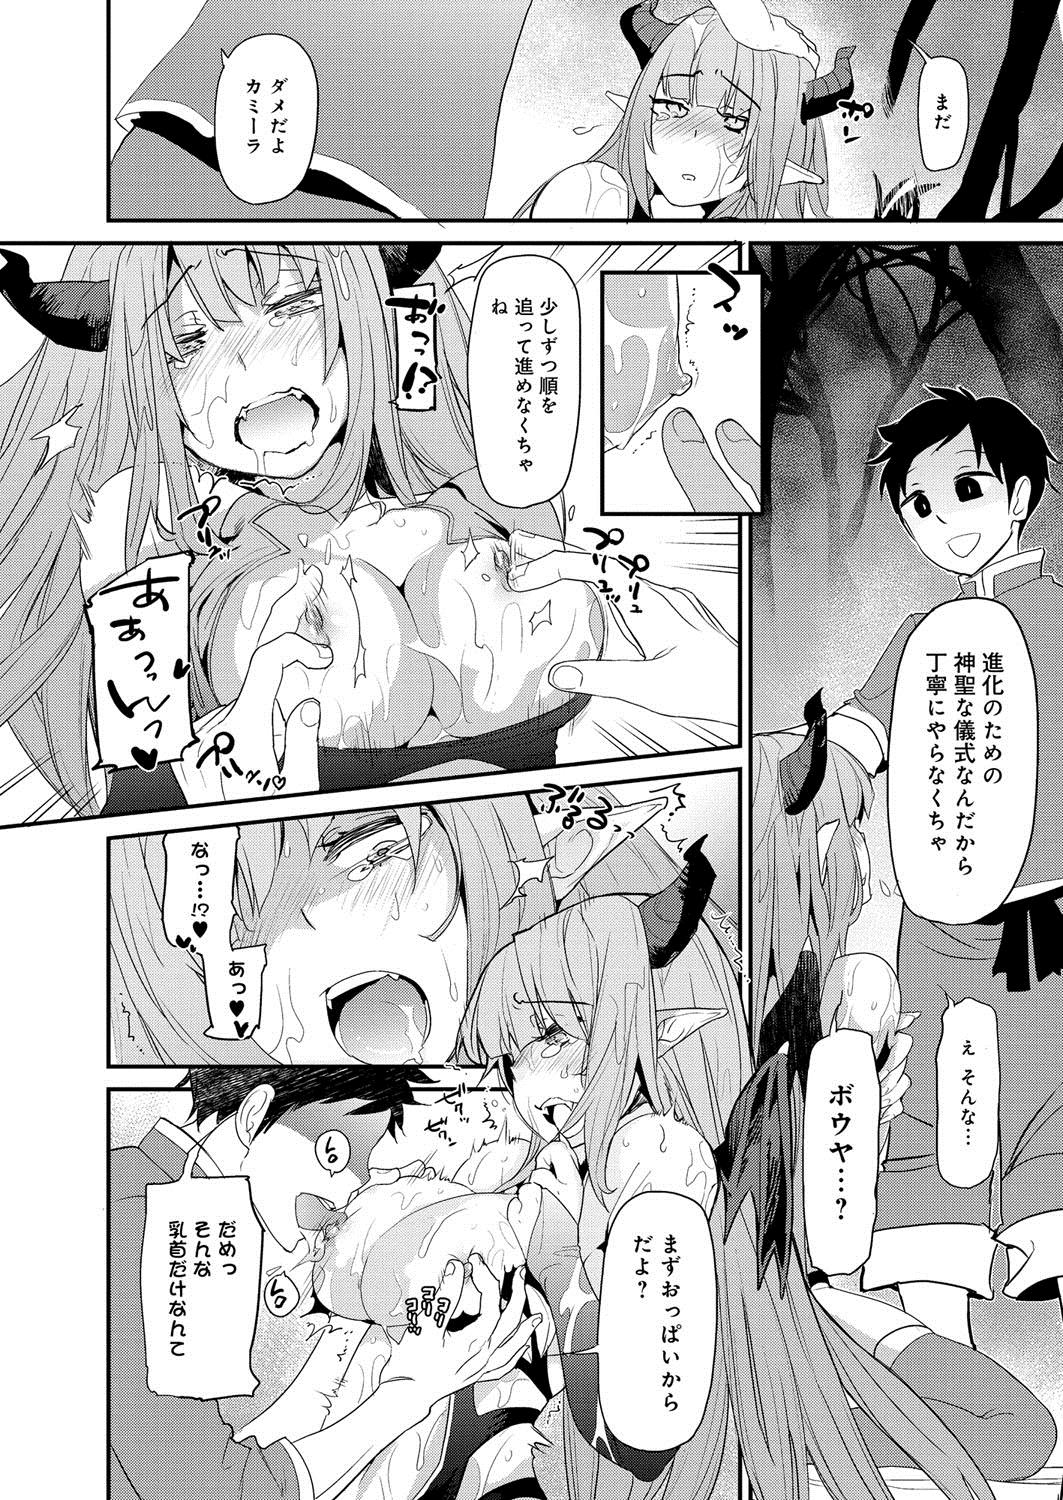 [Anthology] Lord of Valkyrie Adult - Comic Anthology R18 Handakara Saigomade... Mou, Kishi-sama no Ecchi♪ 52